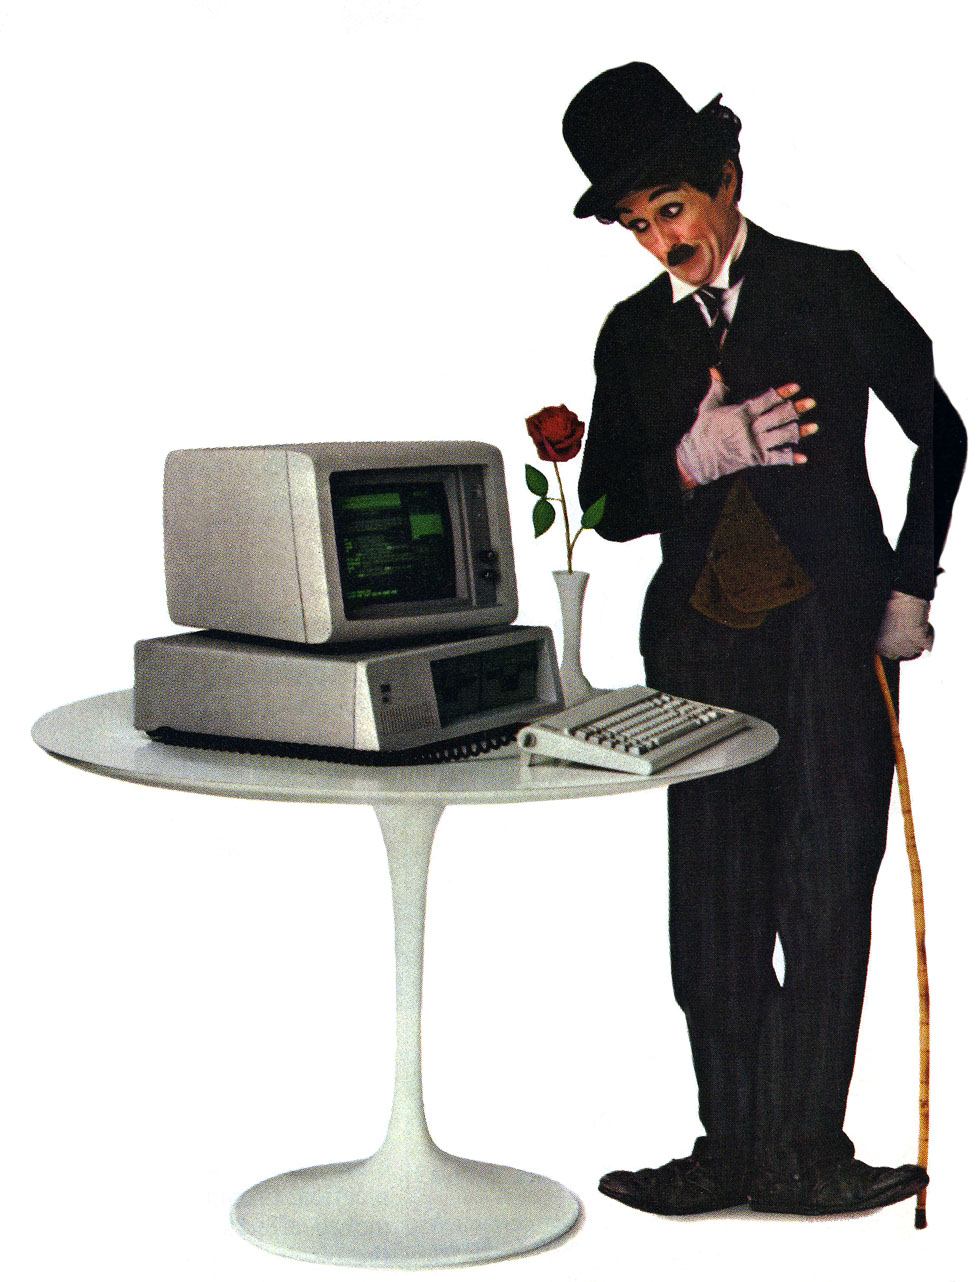 IBM-PC-PerCon-83.jpg